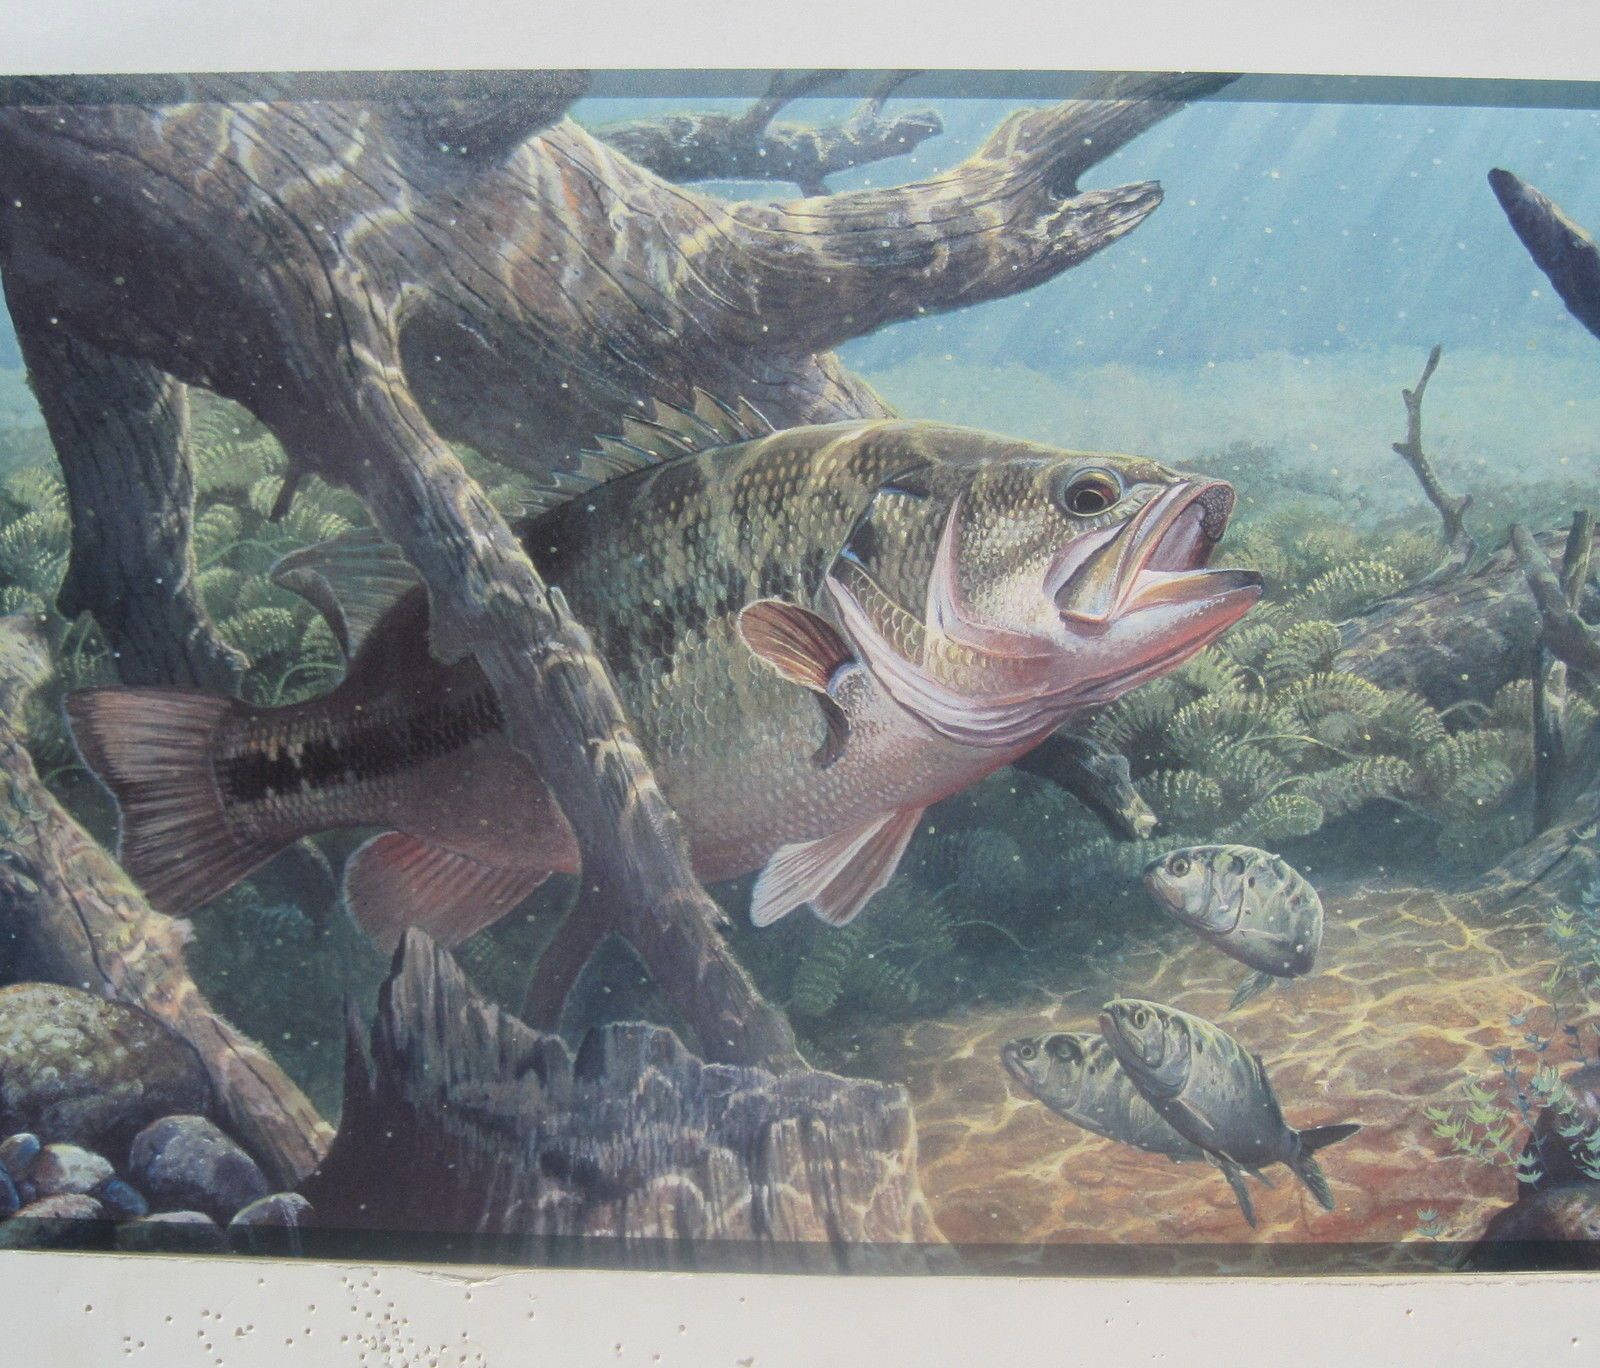 Dagens fangst - en stor bass fisk liggende i flodscenen Wallpaper